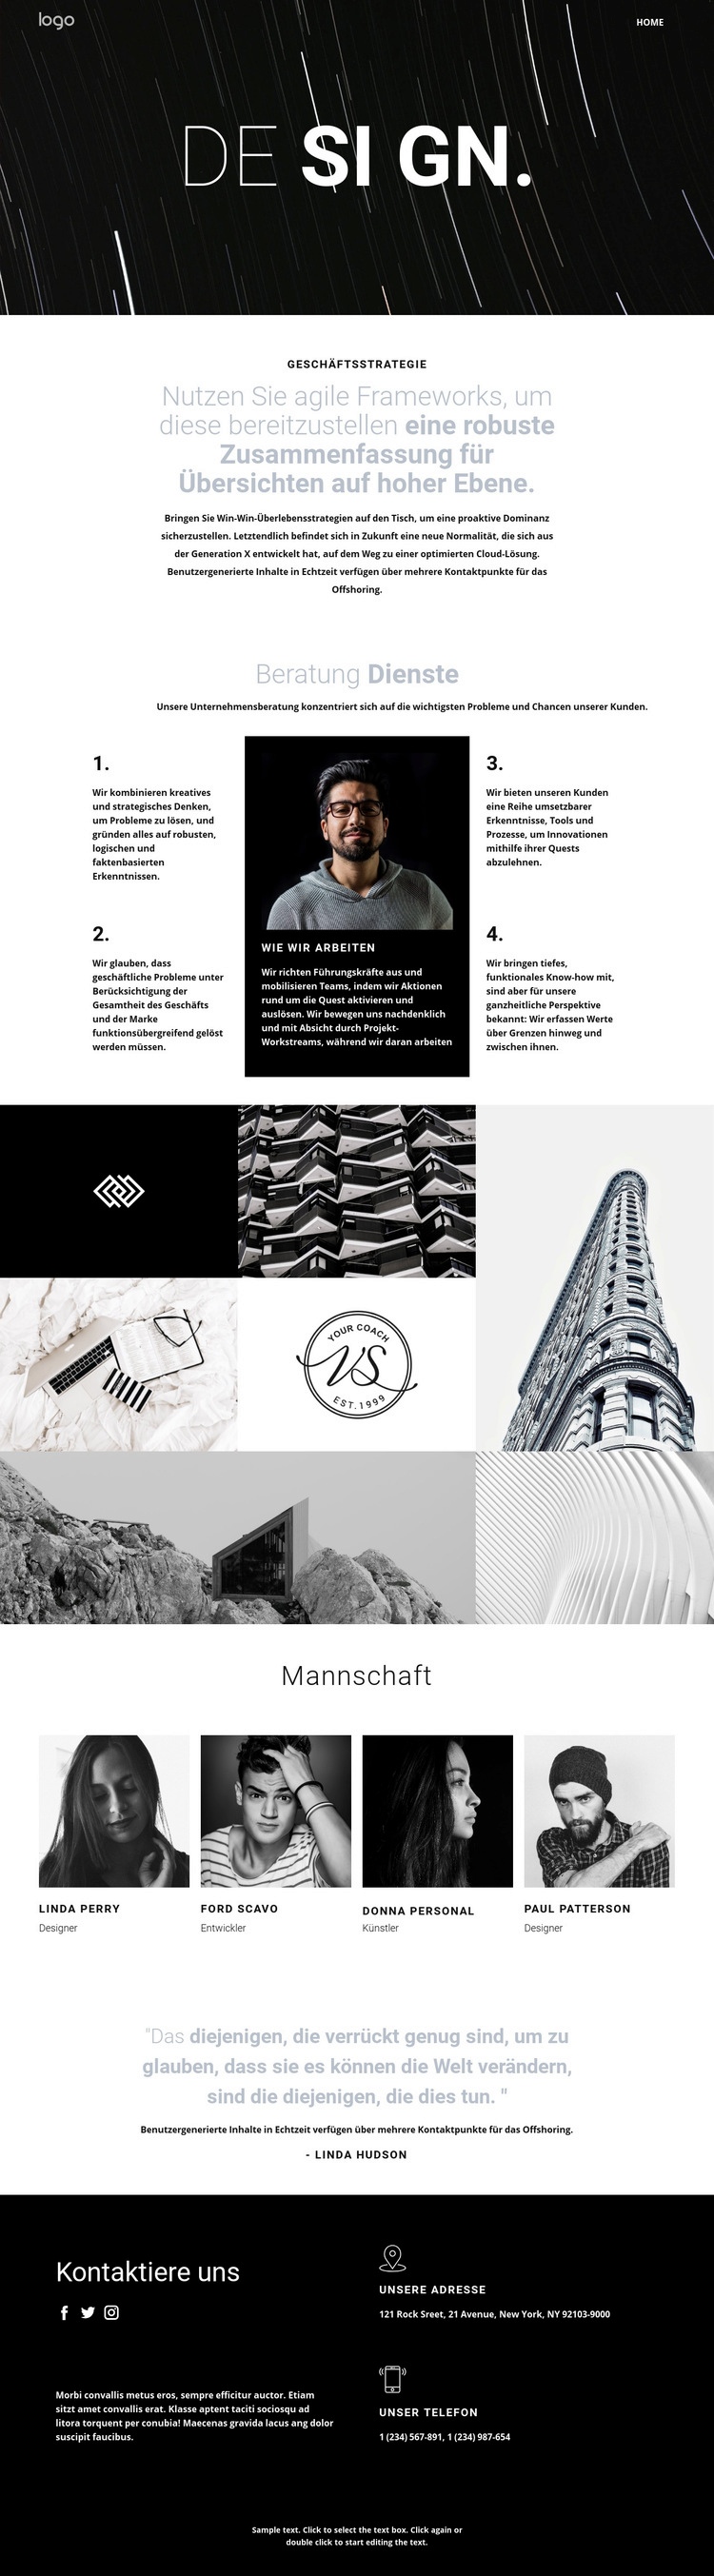 Design und kreative Kunst Website design